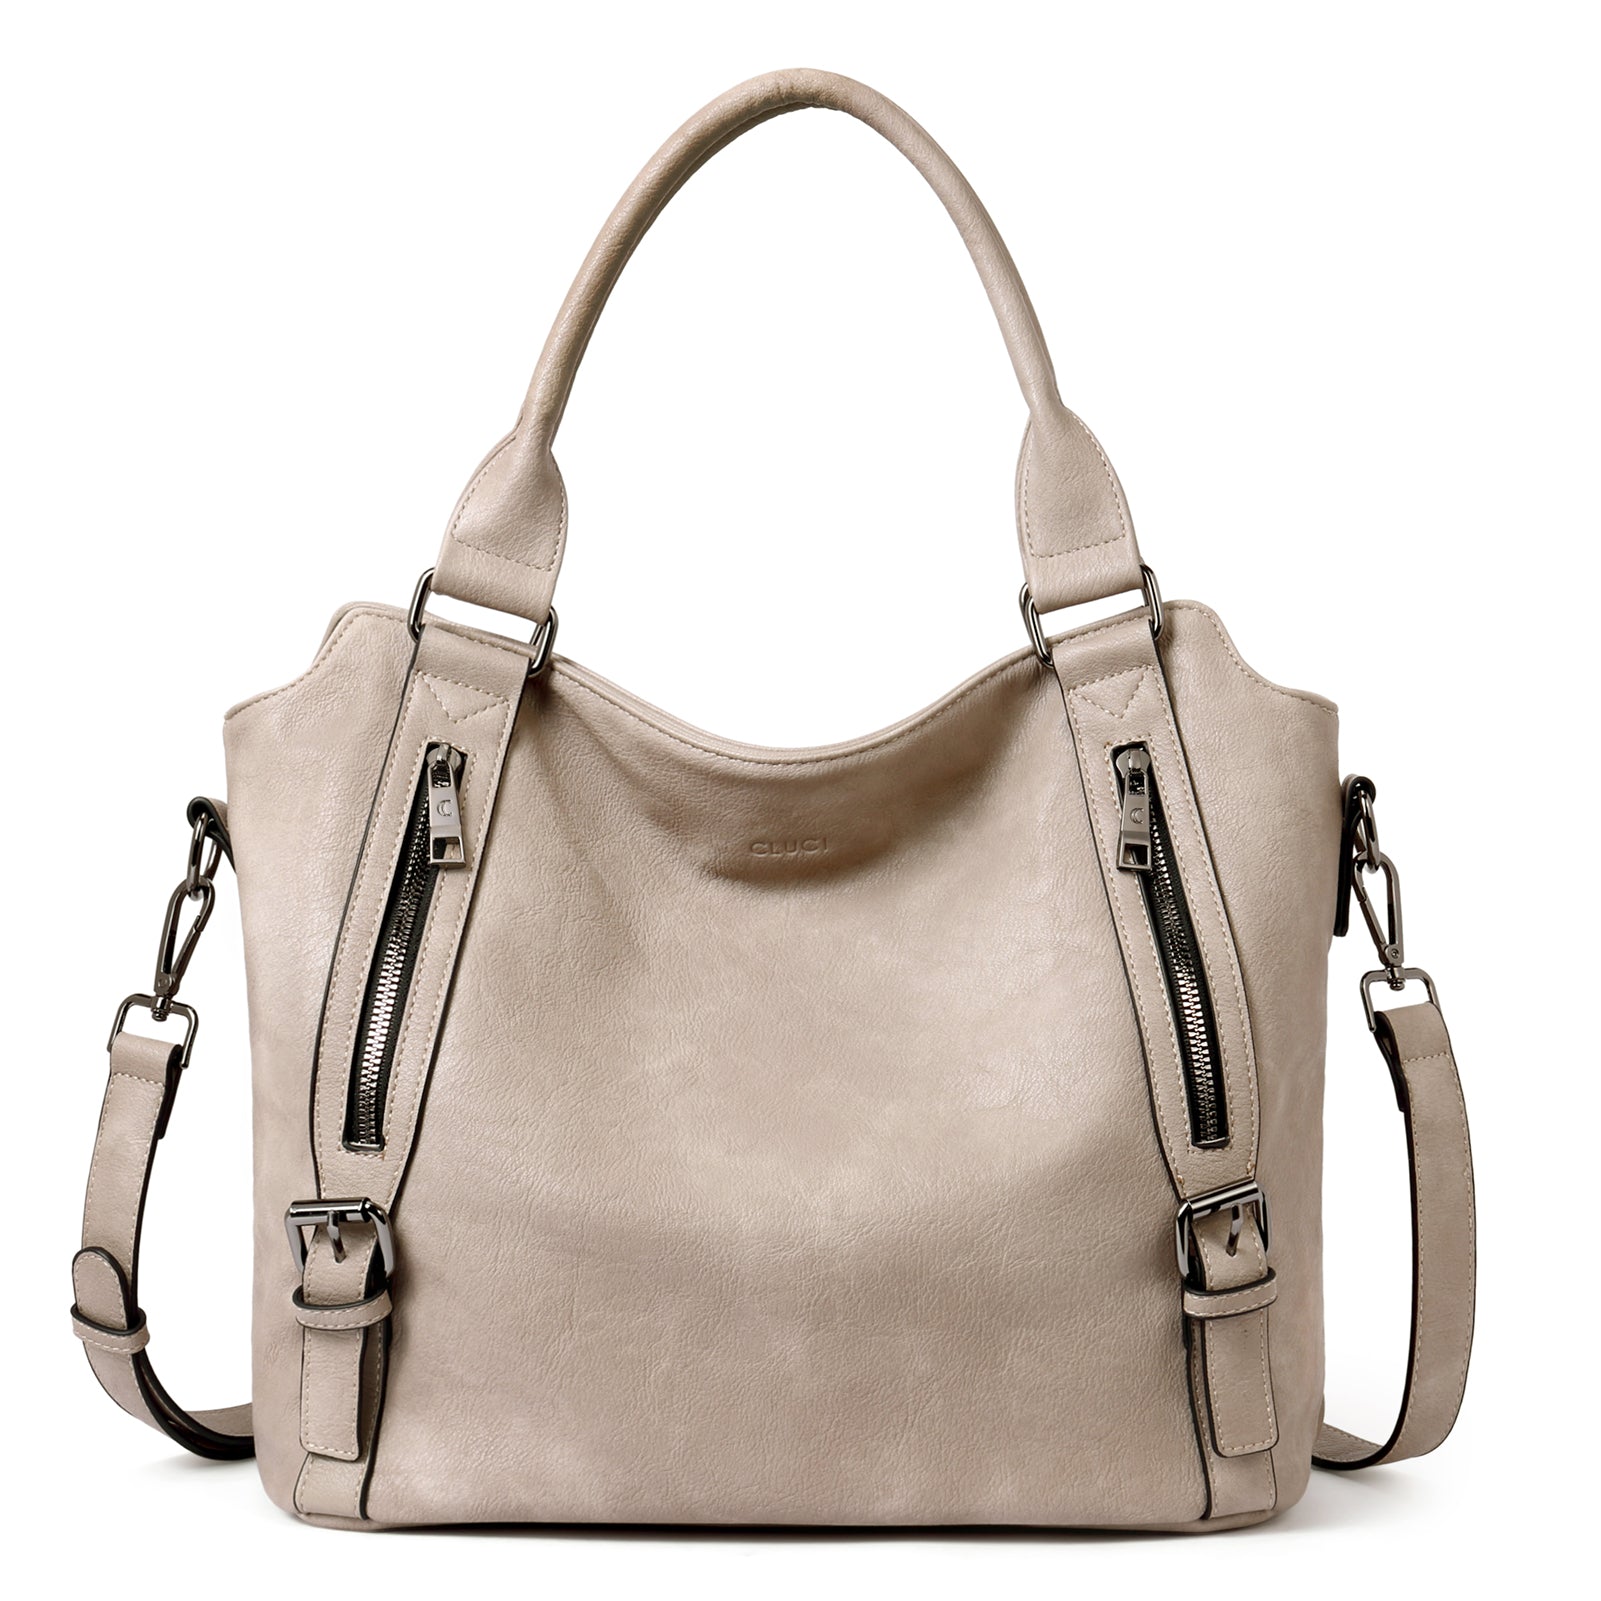 CLUCI Hobo Bags for Women Vegan Leather Handbags Large Tote Ladies Purse Shoulder Bag with Adjustable Shoulder Strap